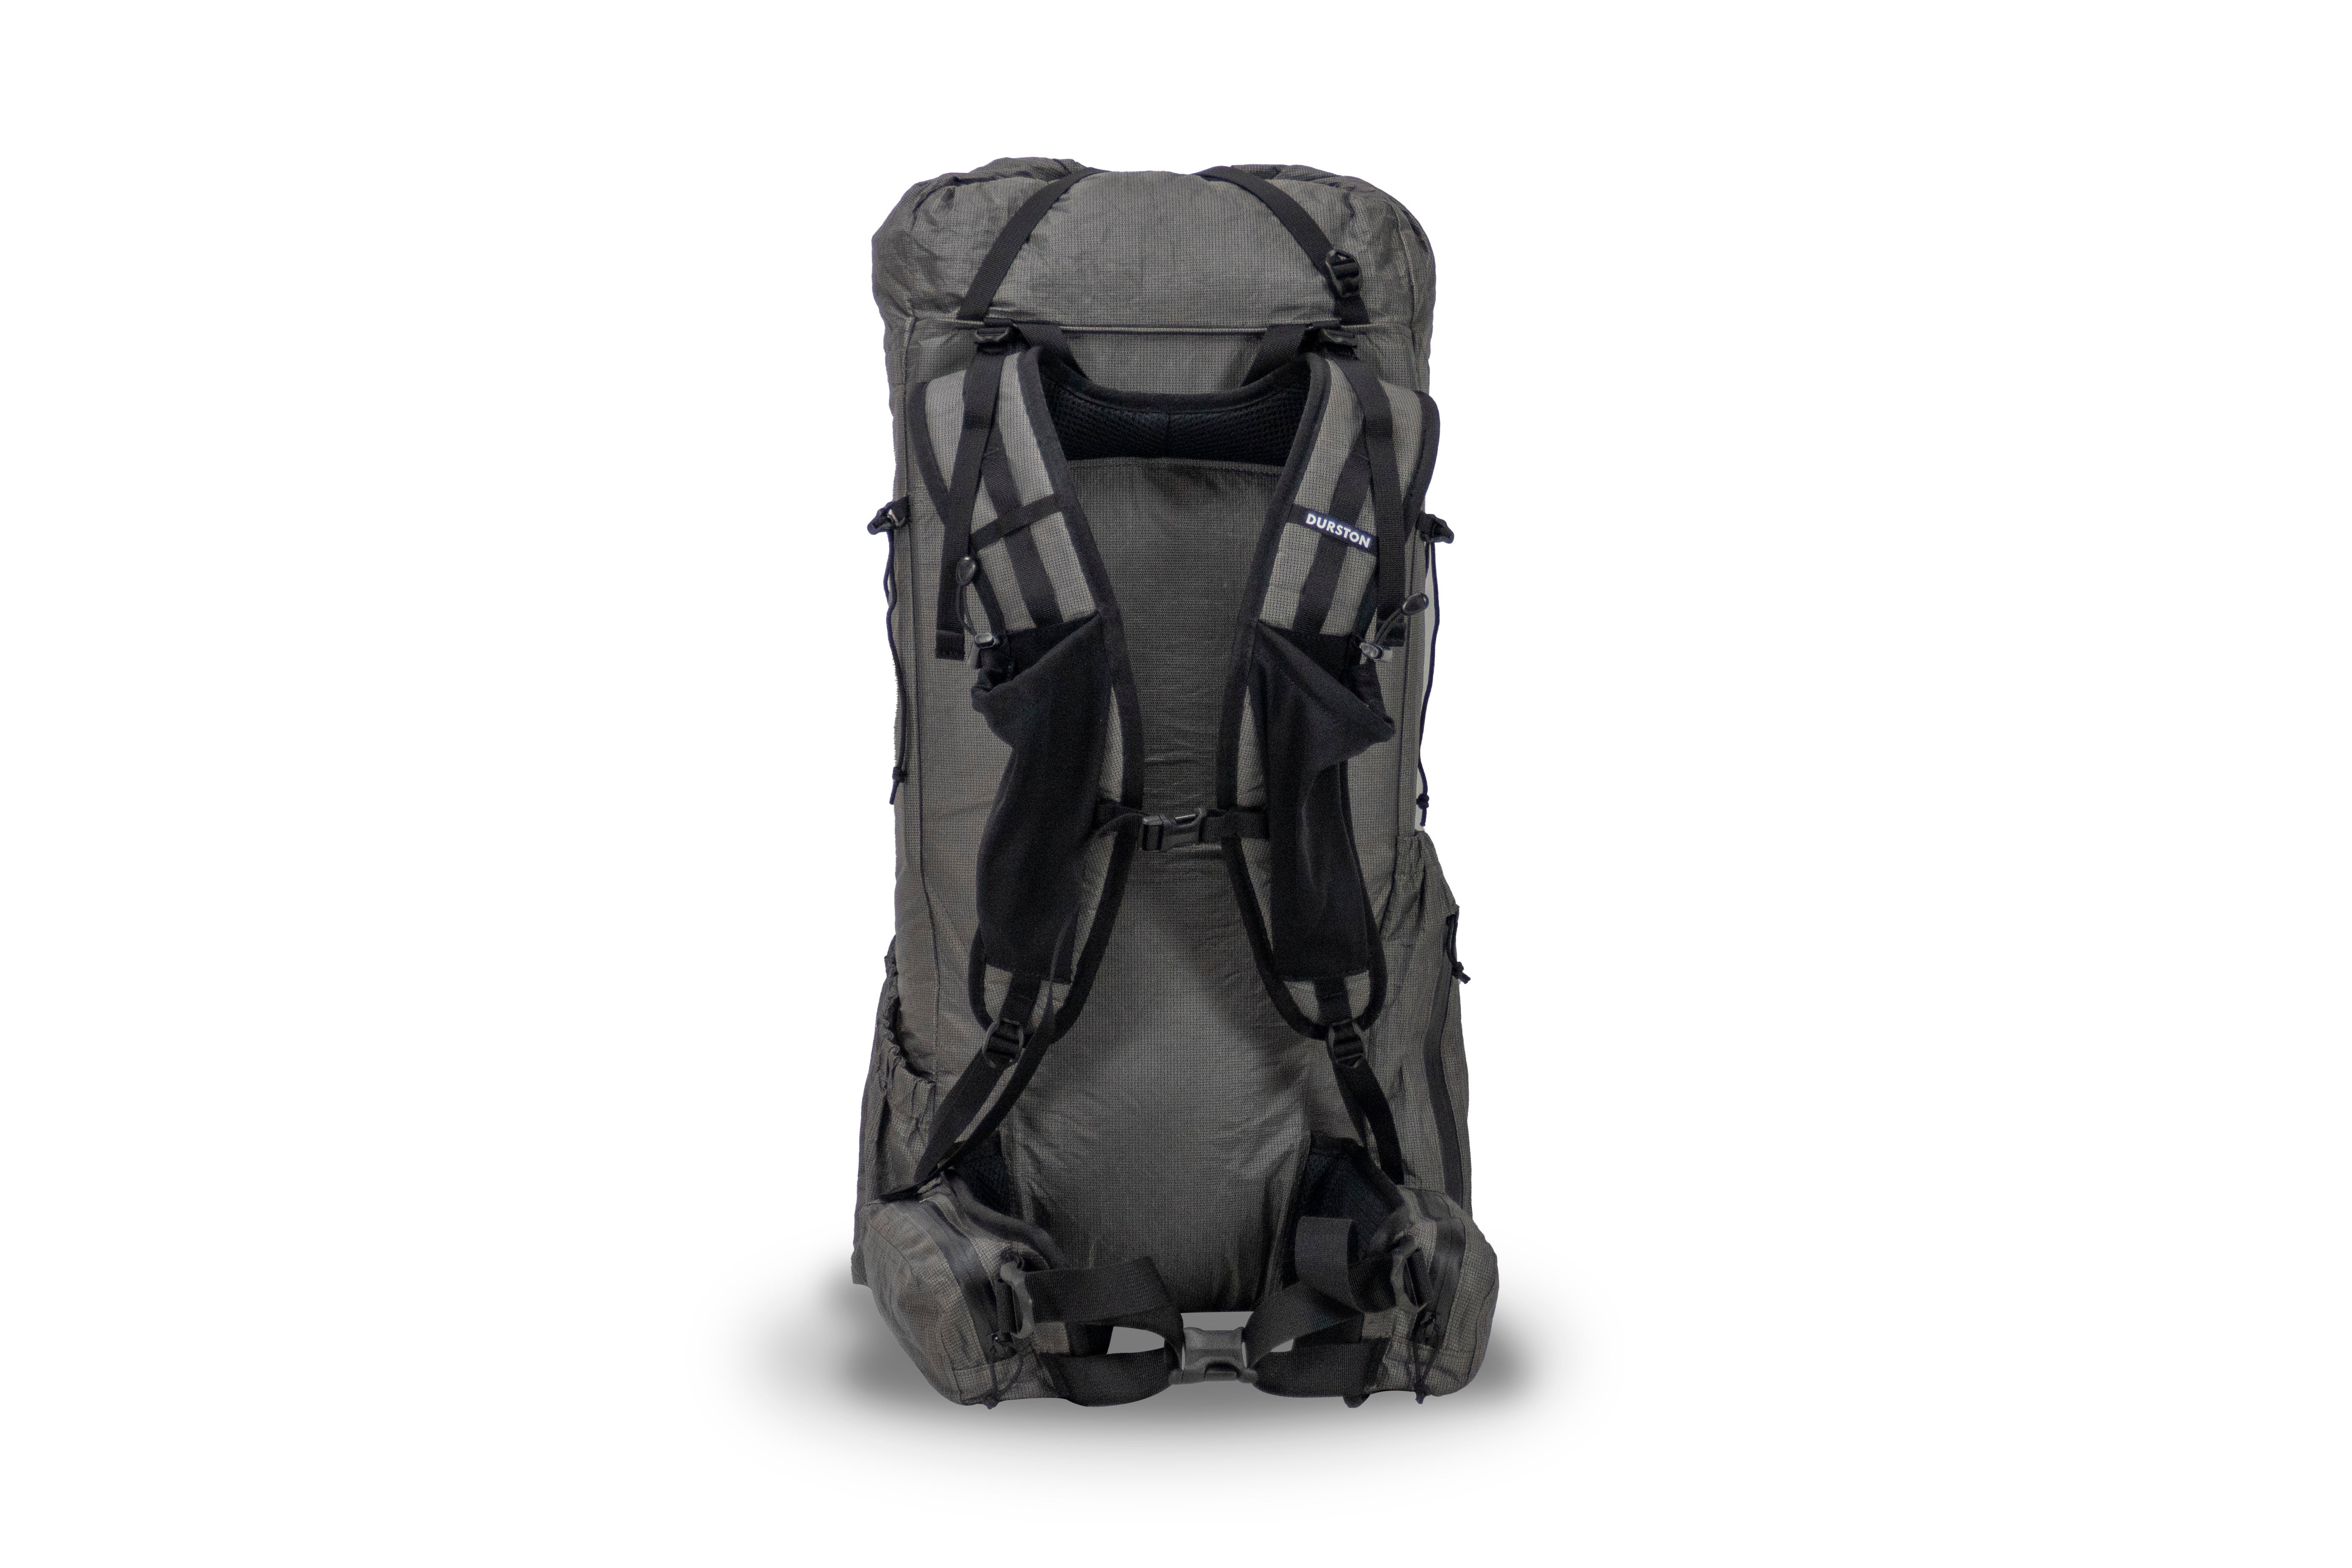 Dan Durston Gear Kakwa 40 Ultralight Backpack front pocket load lifters back pad S curve shoulder straps